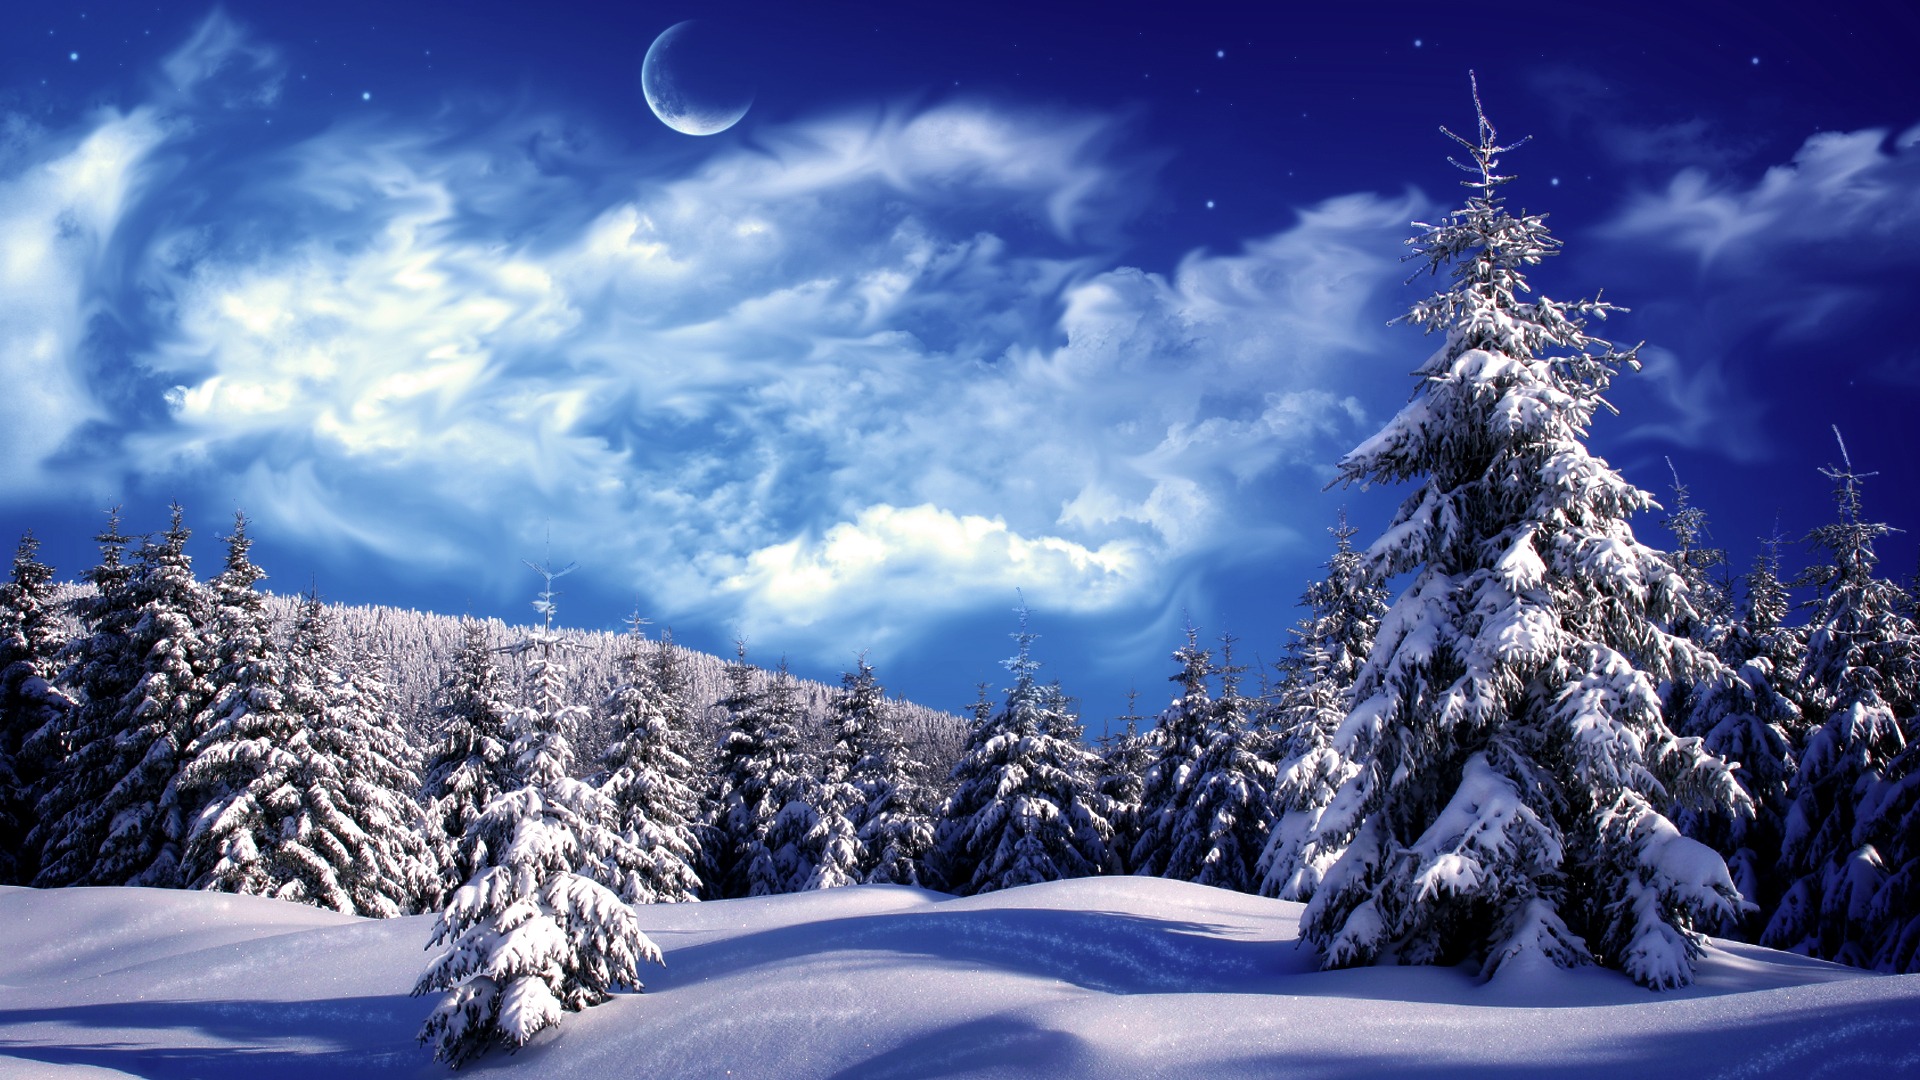 Beautiful Winter Landscape Wallpaper - Winter Scenery Hd , HD Wallpaper & Backgrounds